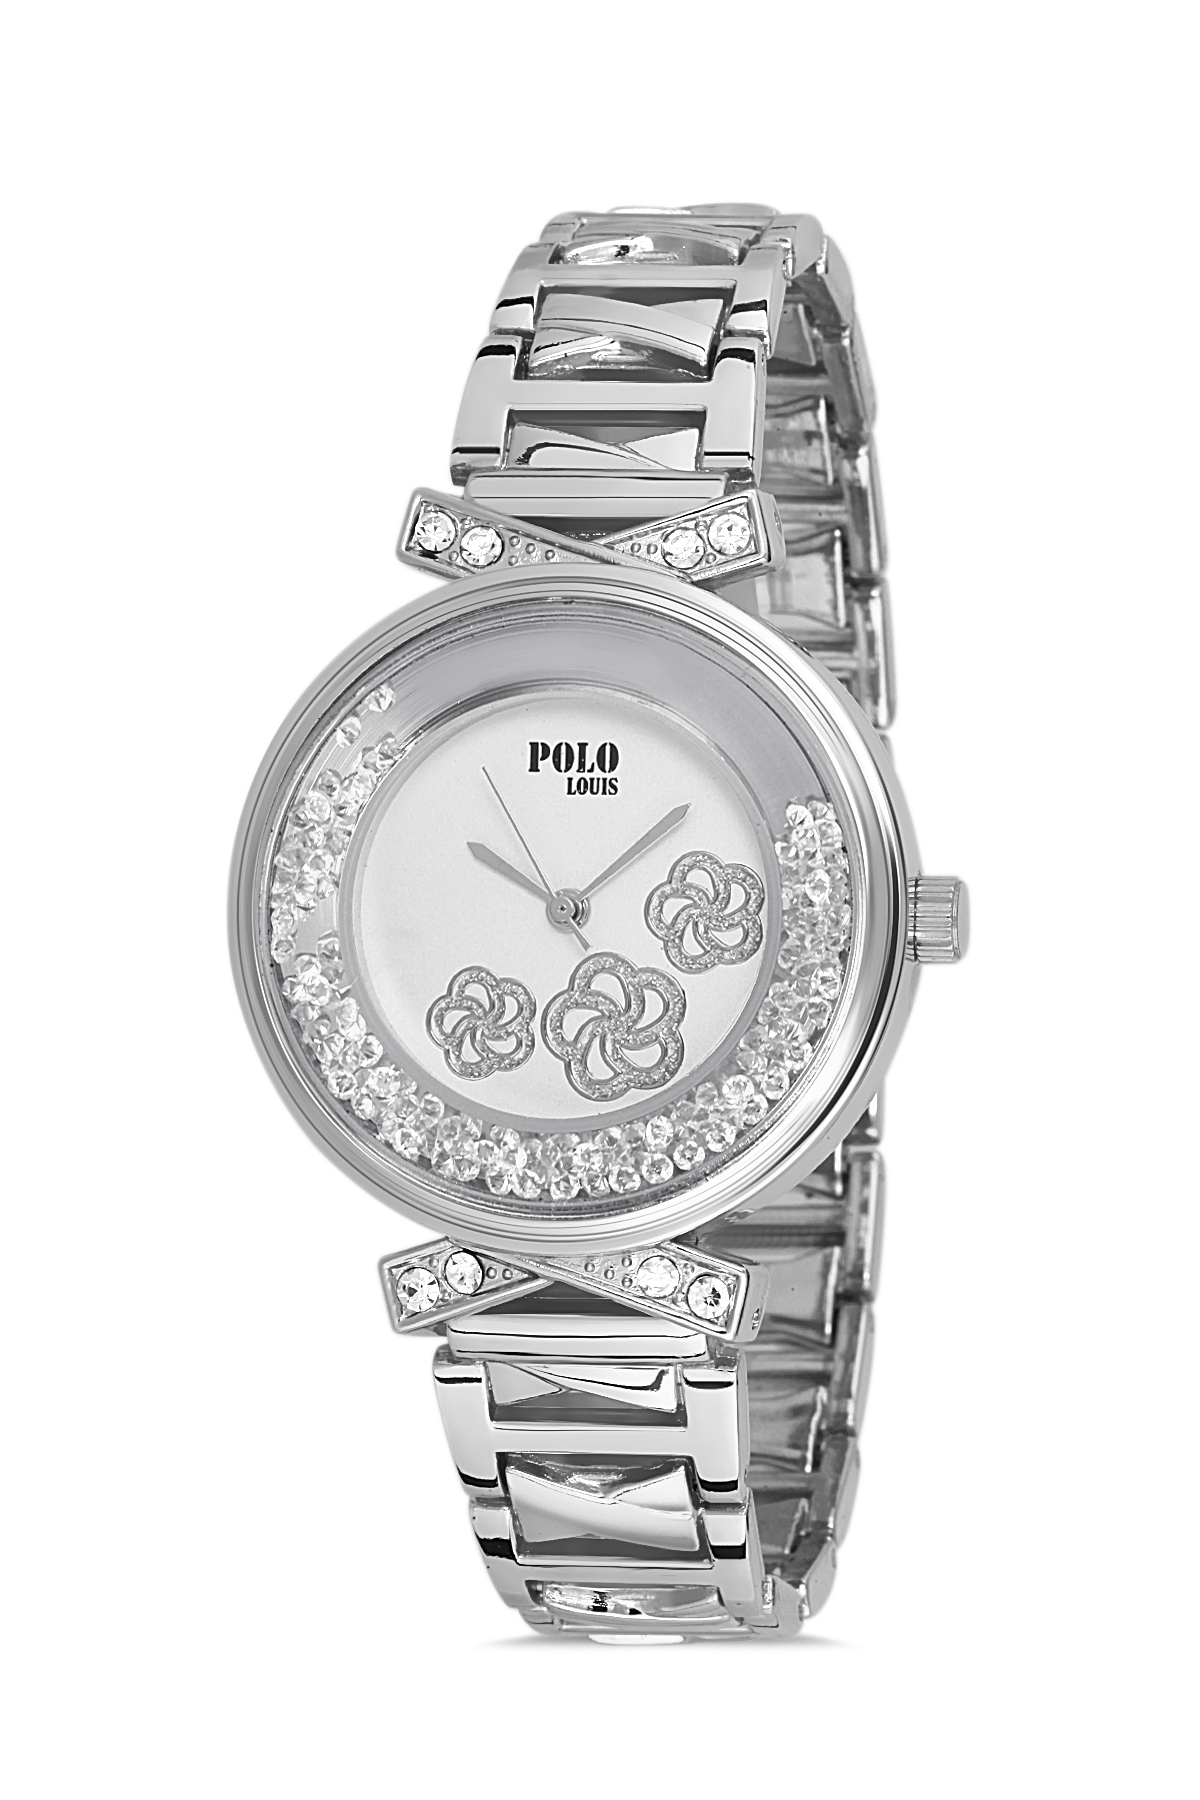 Polo Louis Çiçek Desenli Kadın Kol Saati Ve Zirkon Taşlı 5 Taş Bileklik Kombin Gümüş Renk PL-1473B2